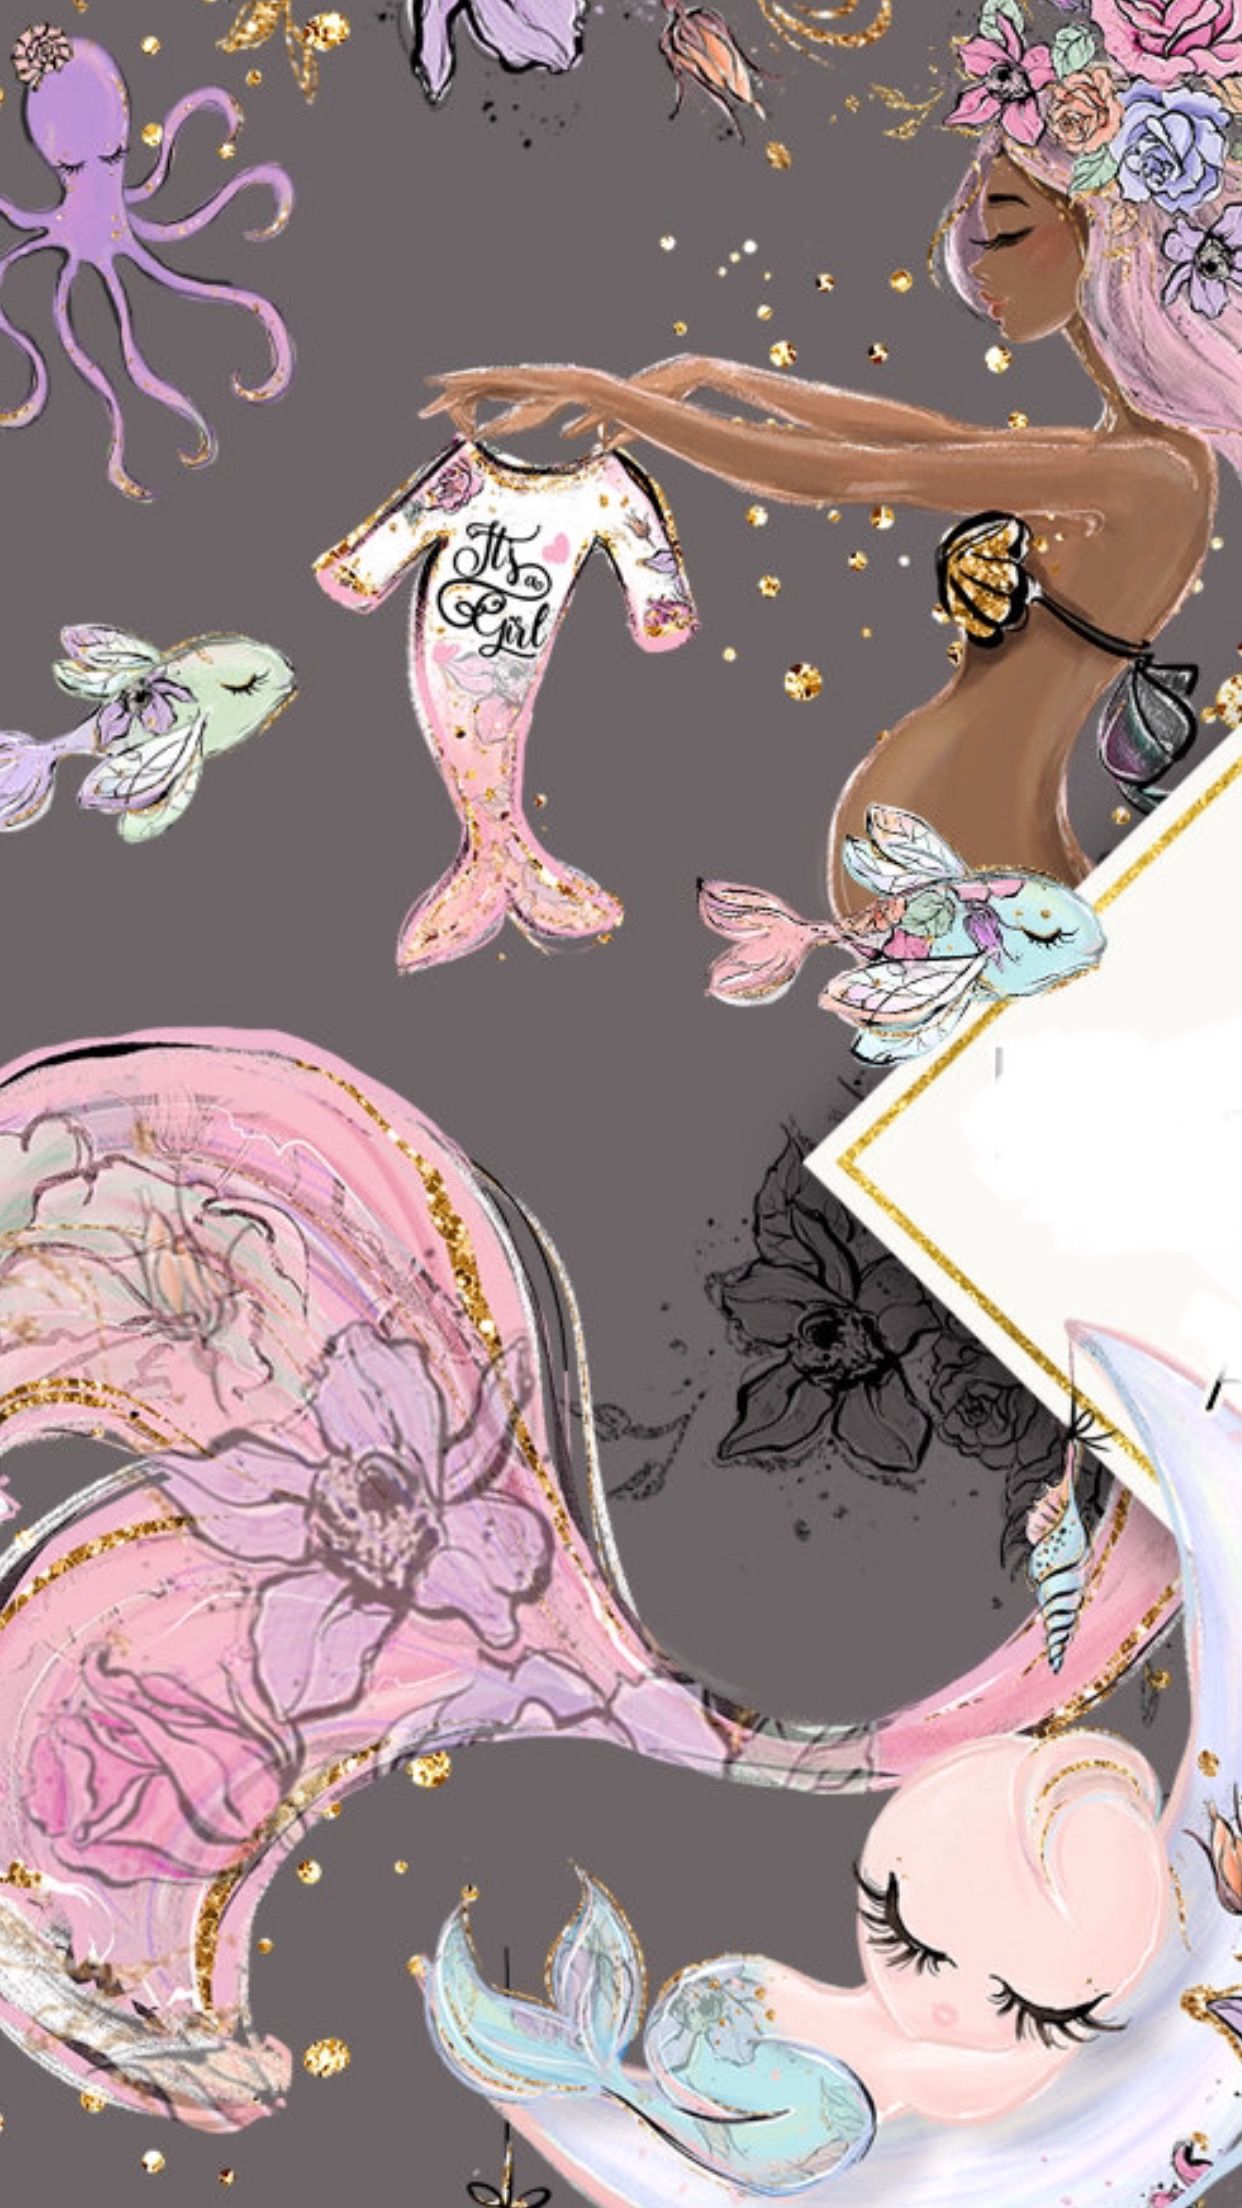 Sirenas Wallpaper - Fondo De Pantalla Para Embarazadas , HD Wallpaper & Backgrounds